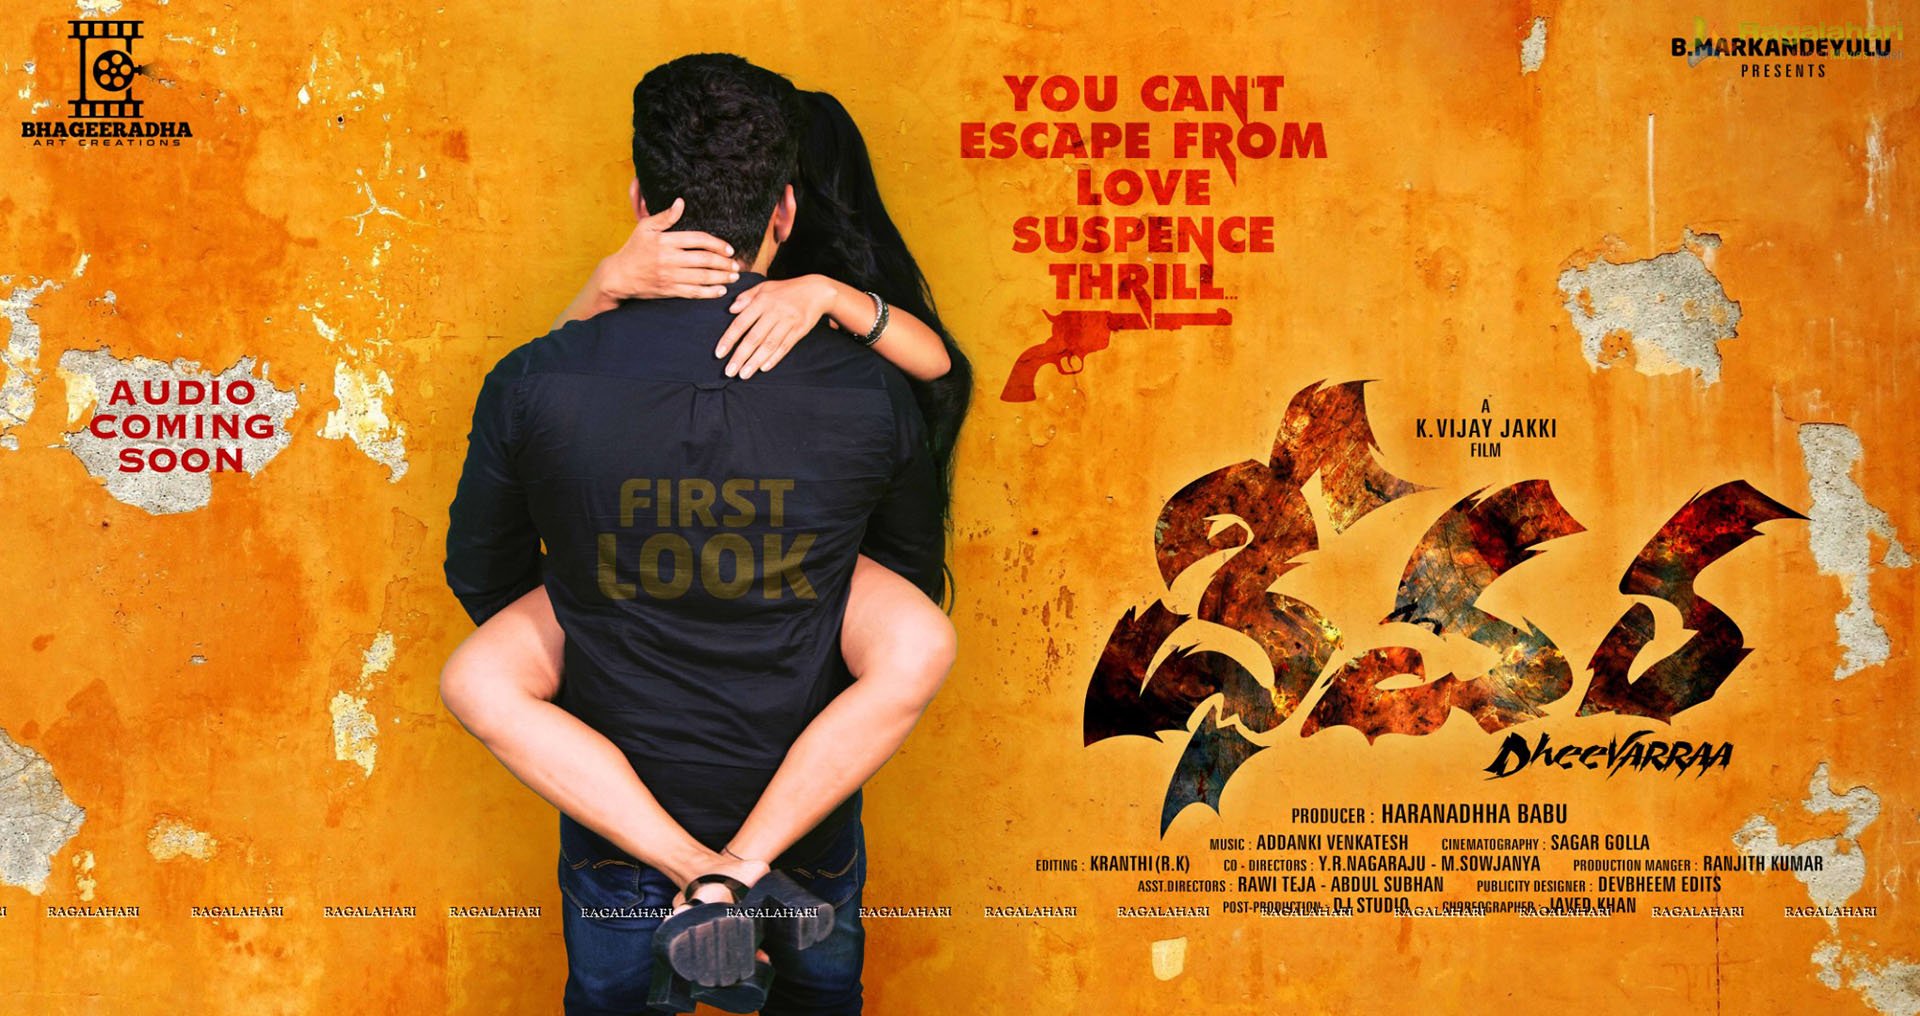 Dheevarra Movie Poster
